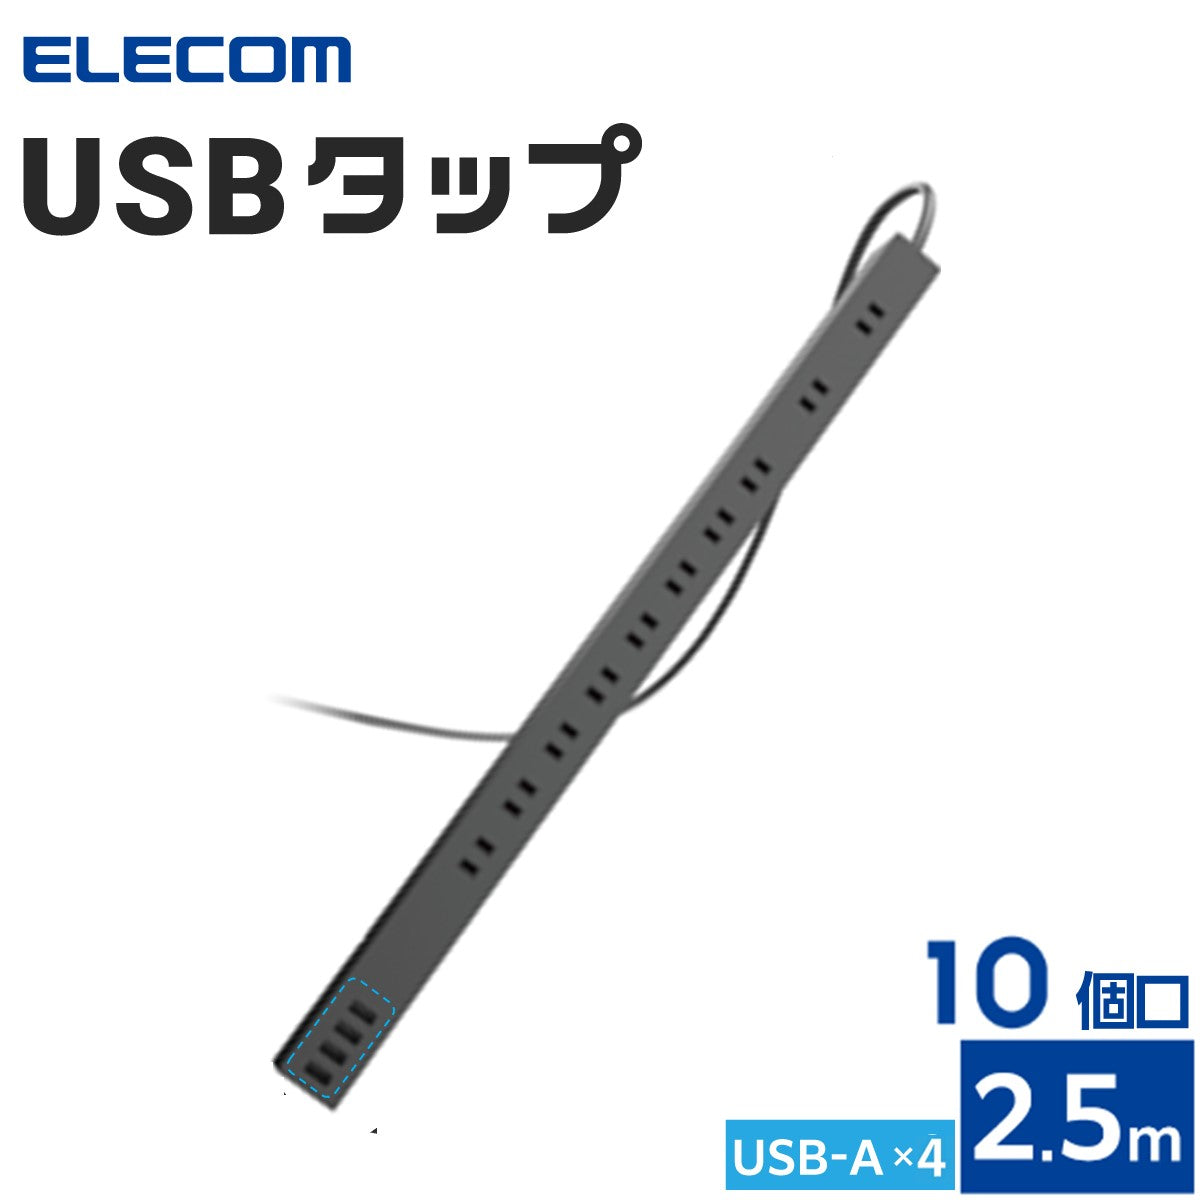 エレコム 電源タップ USBタップ ホコリ防止シャッター付 固定可能 10口 合計24W USB-Aメス4ポート